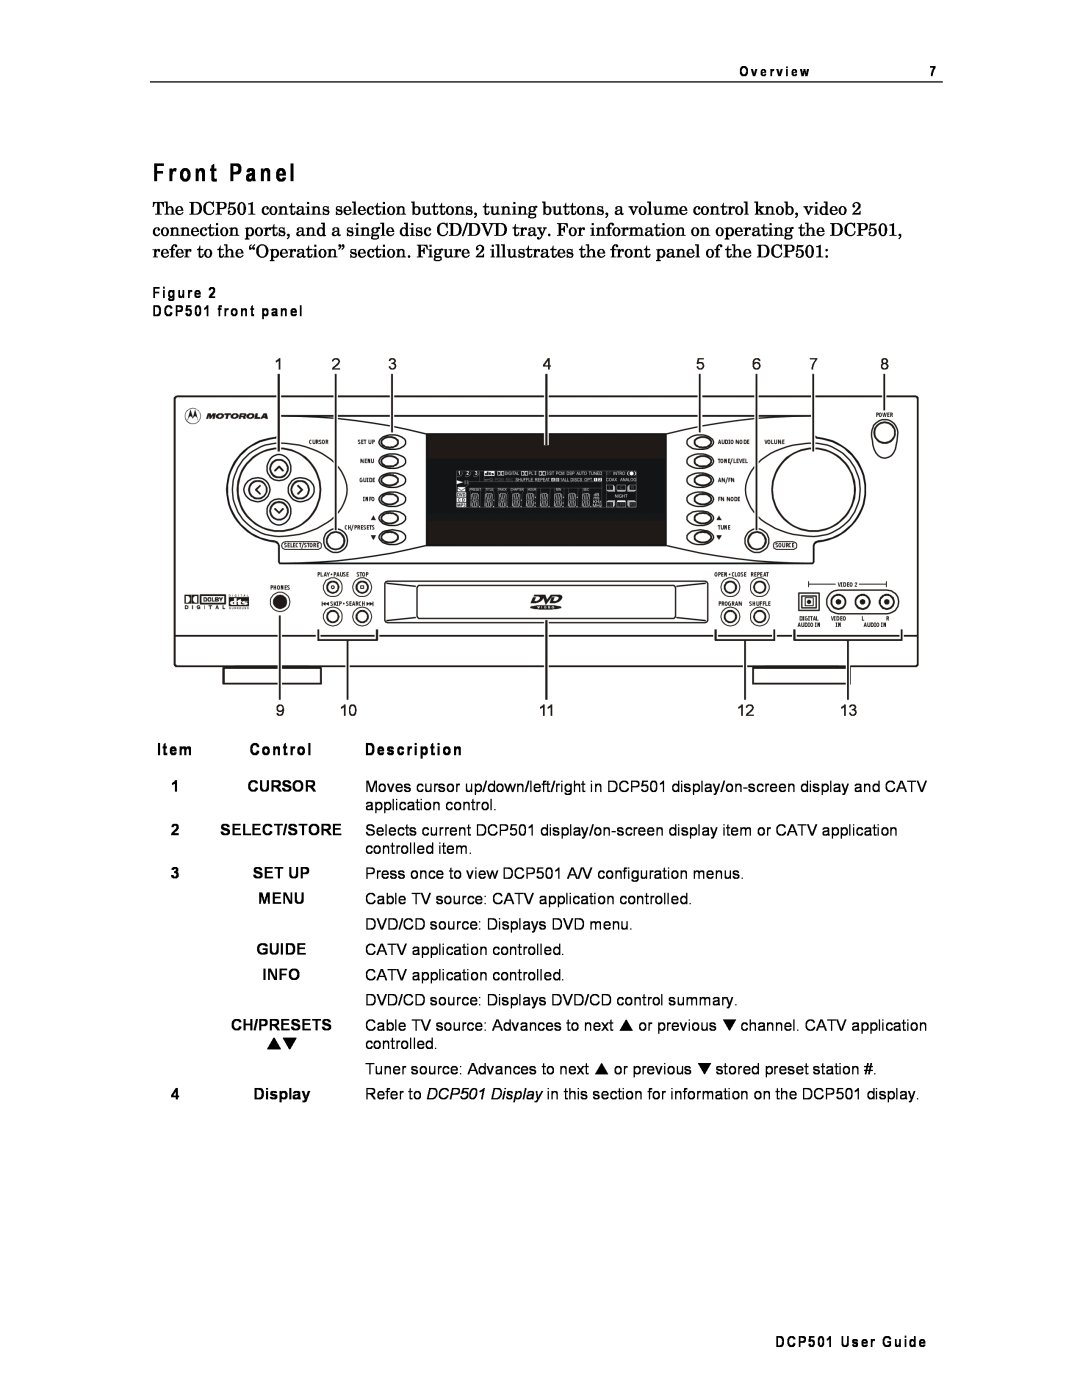 Motorola DCP501 manual F ro n t P an el, Item Control Description 